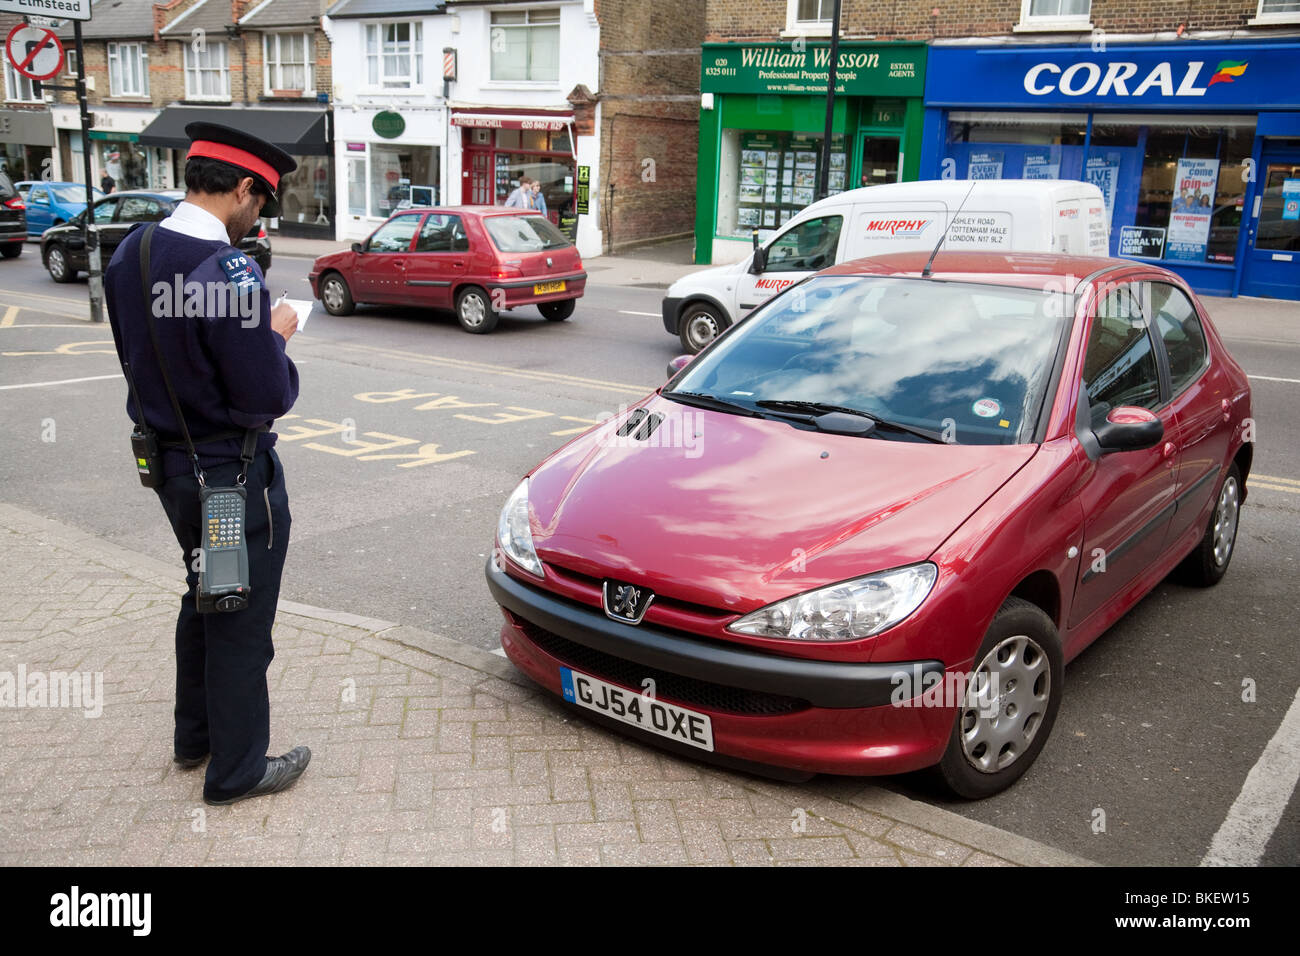 Traffic Warden schreiben Sie ein Ticket für ein Auto, Chislehurst, SE London, UK Stockfoto